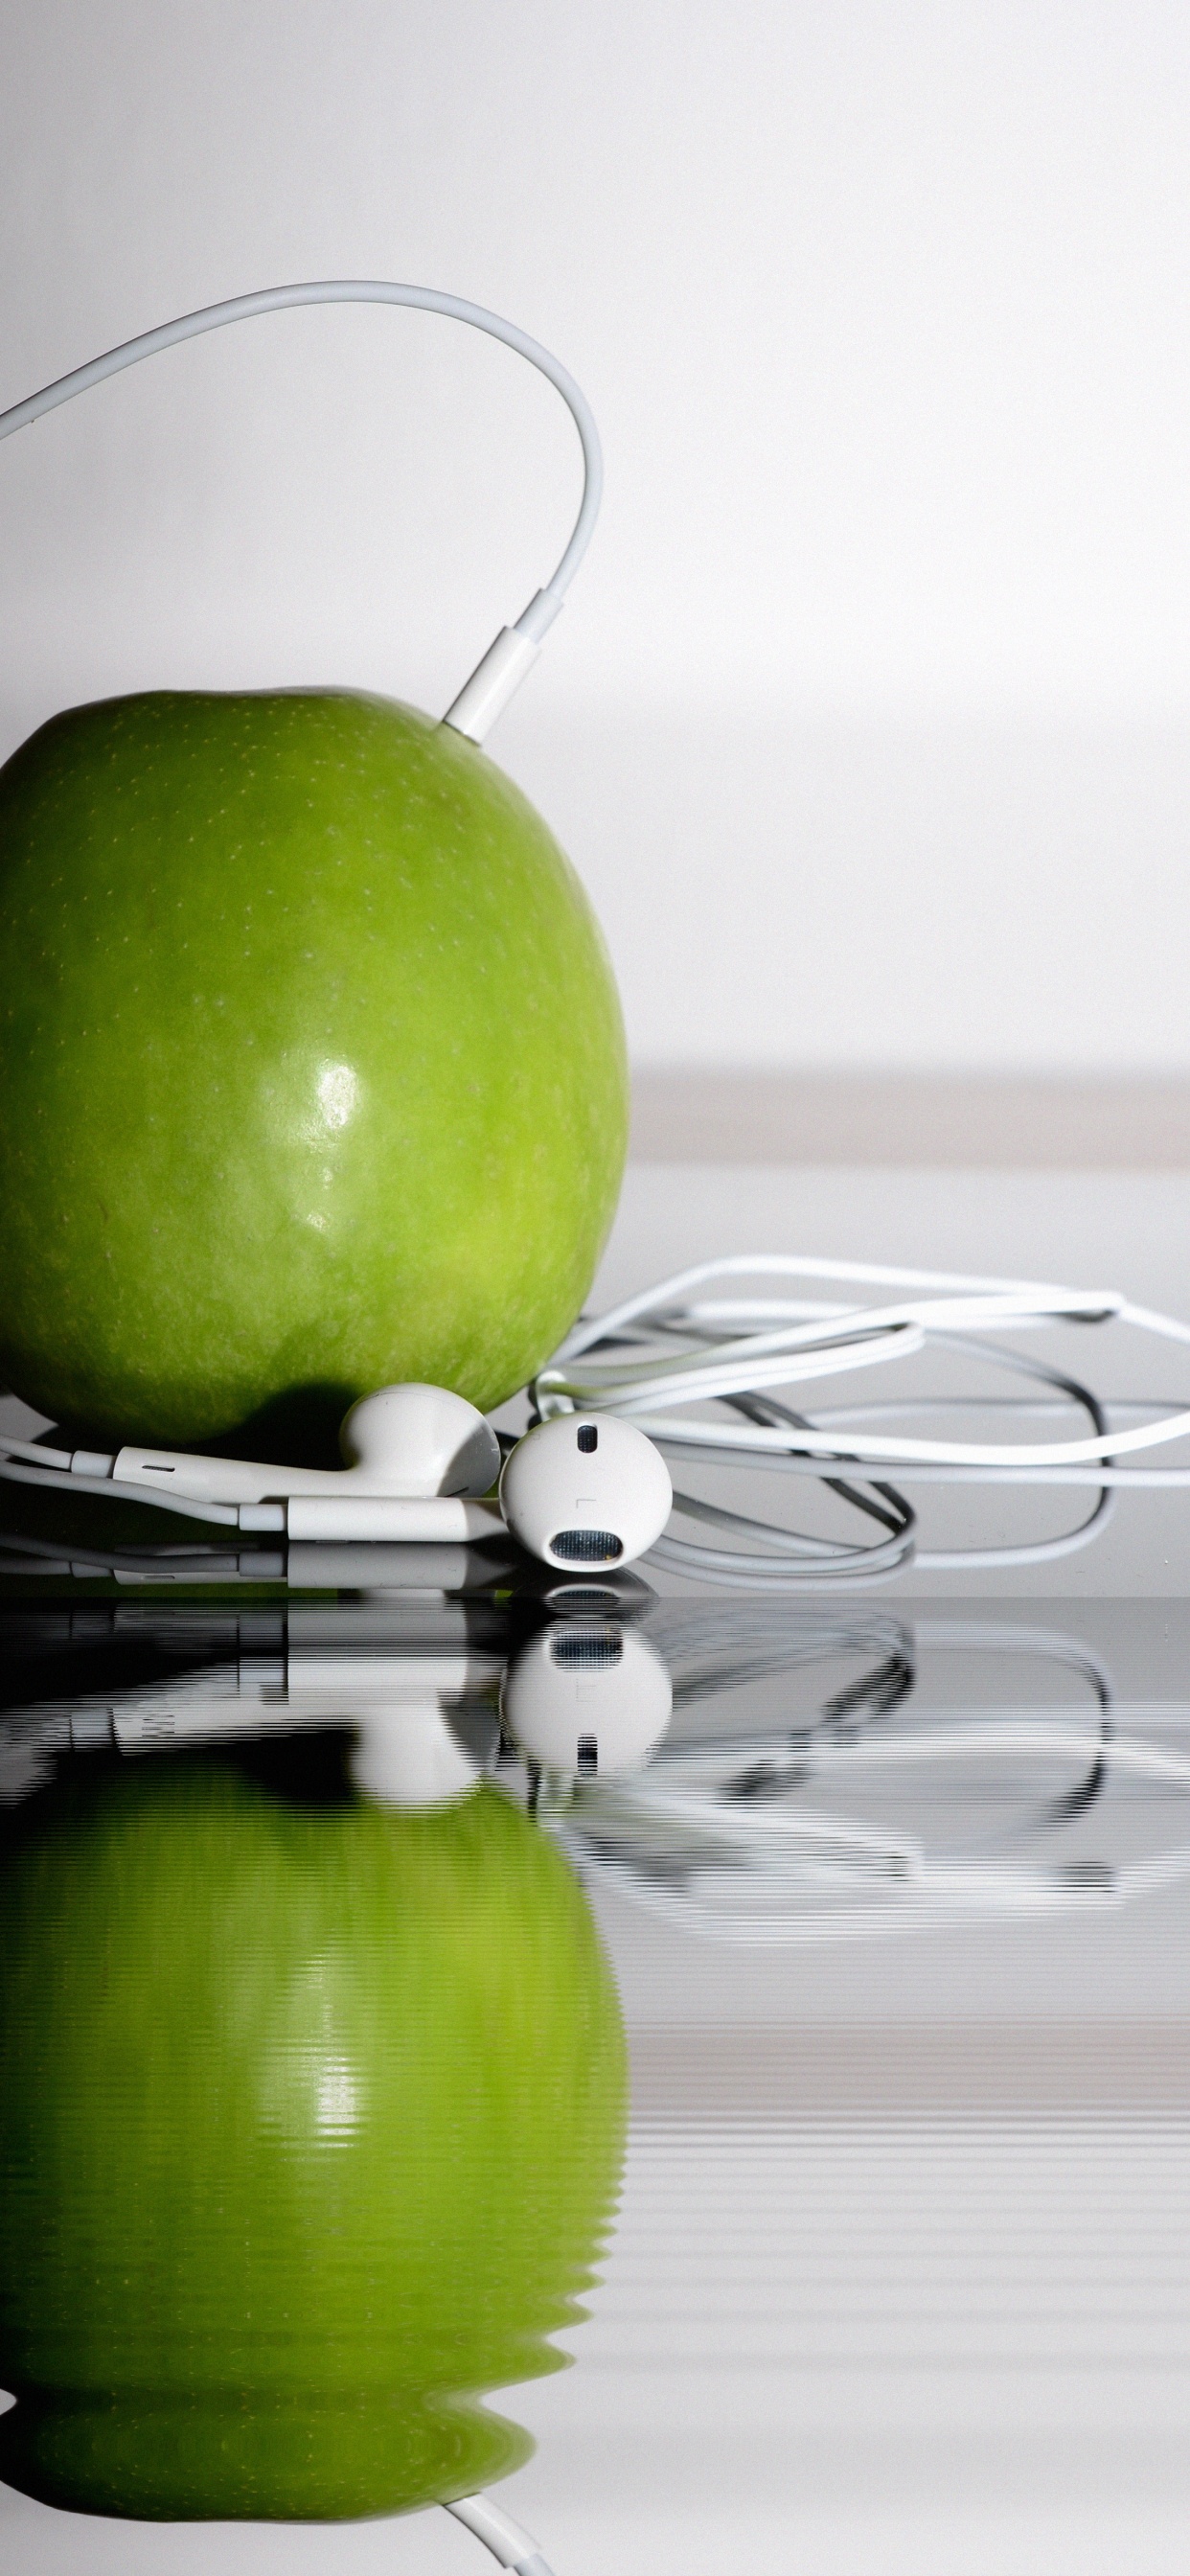 苹果的耳机, 绿色的, 奶奶史密斯, Apple, 食品 壁纸 1242x2688 允许